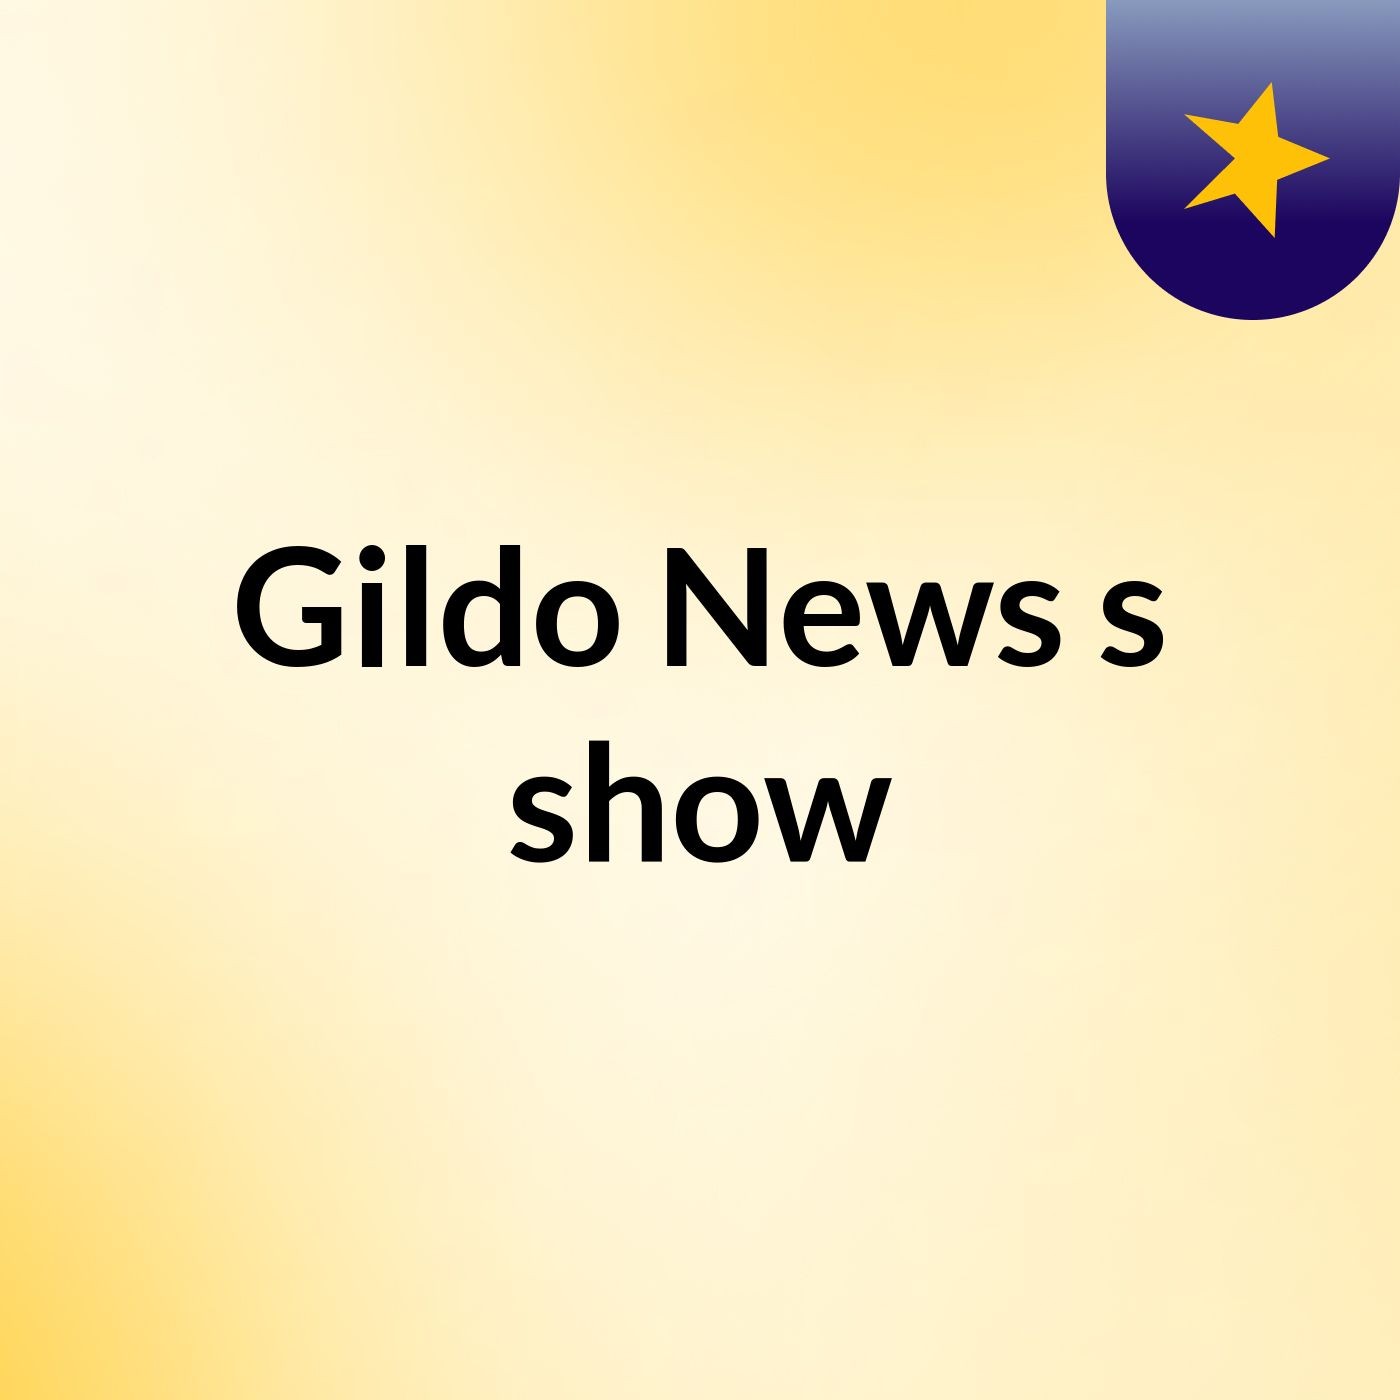 Gildo News's show